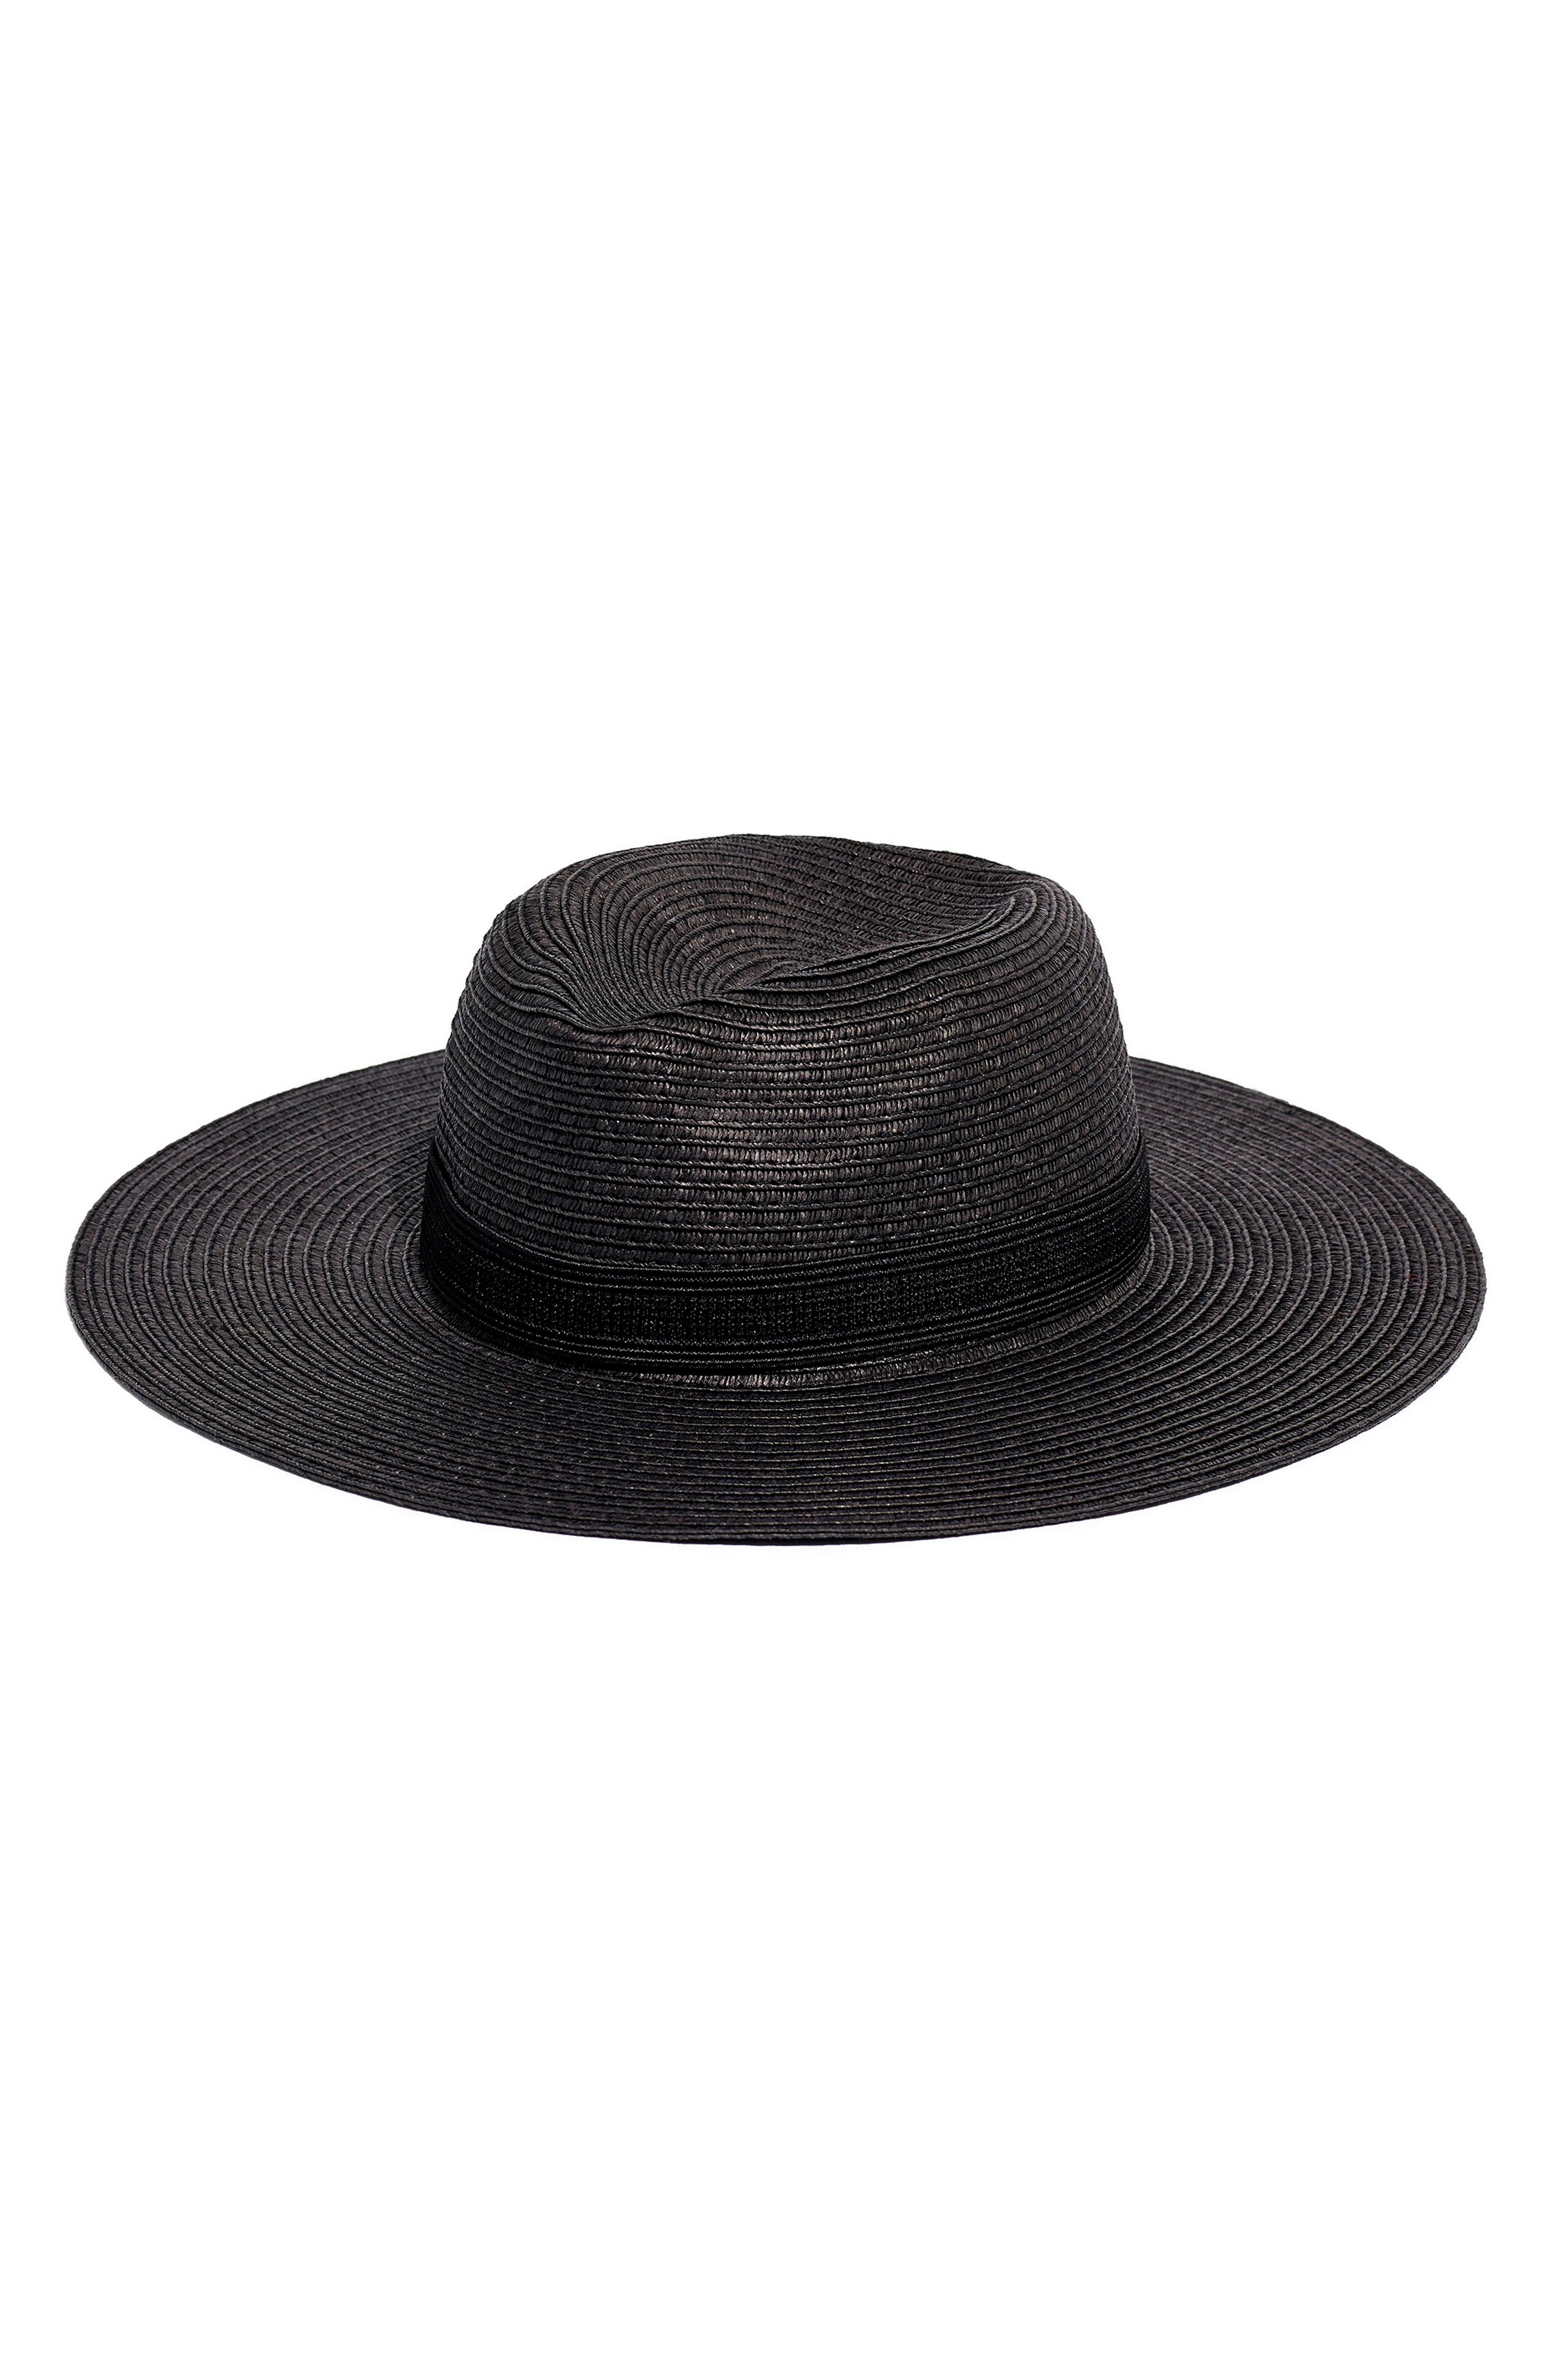 black wicker hat